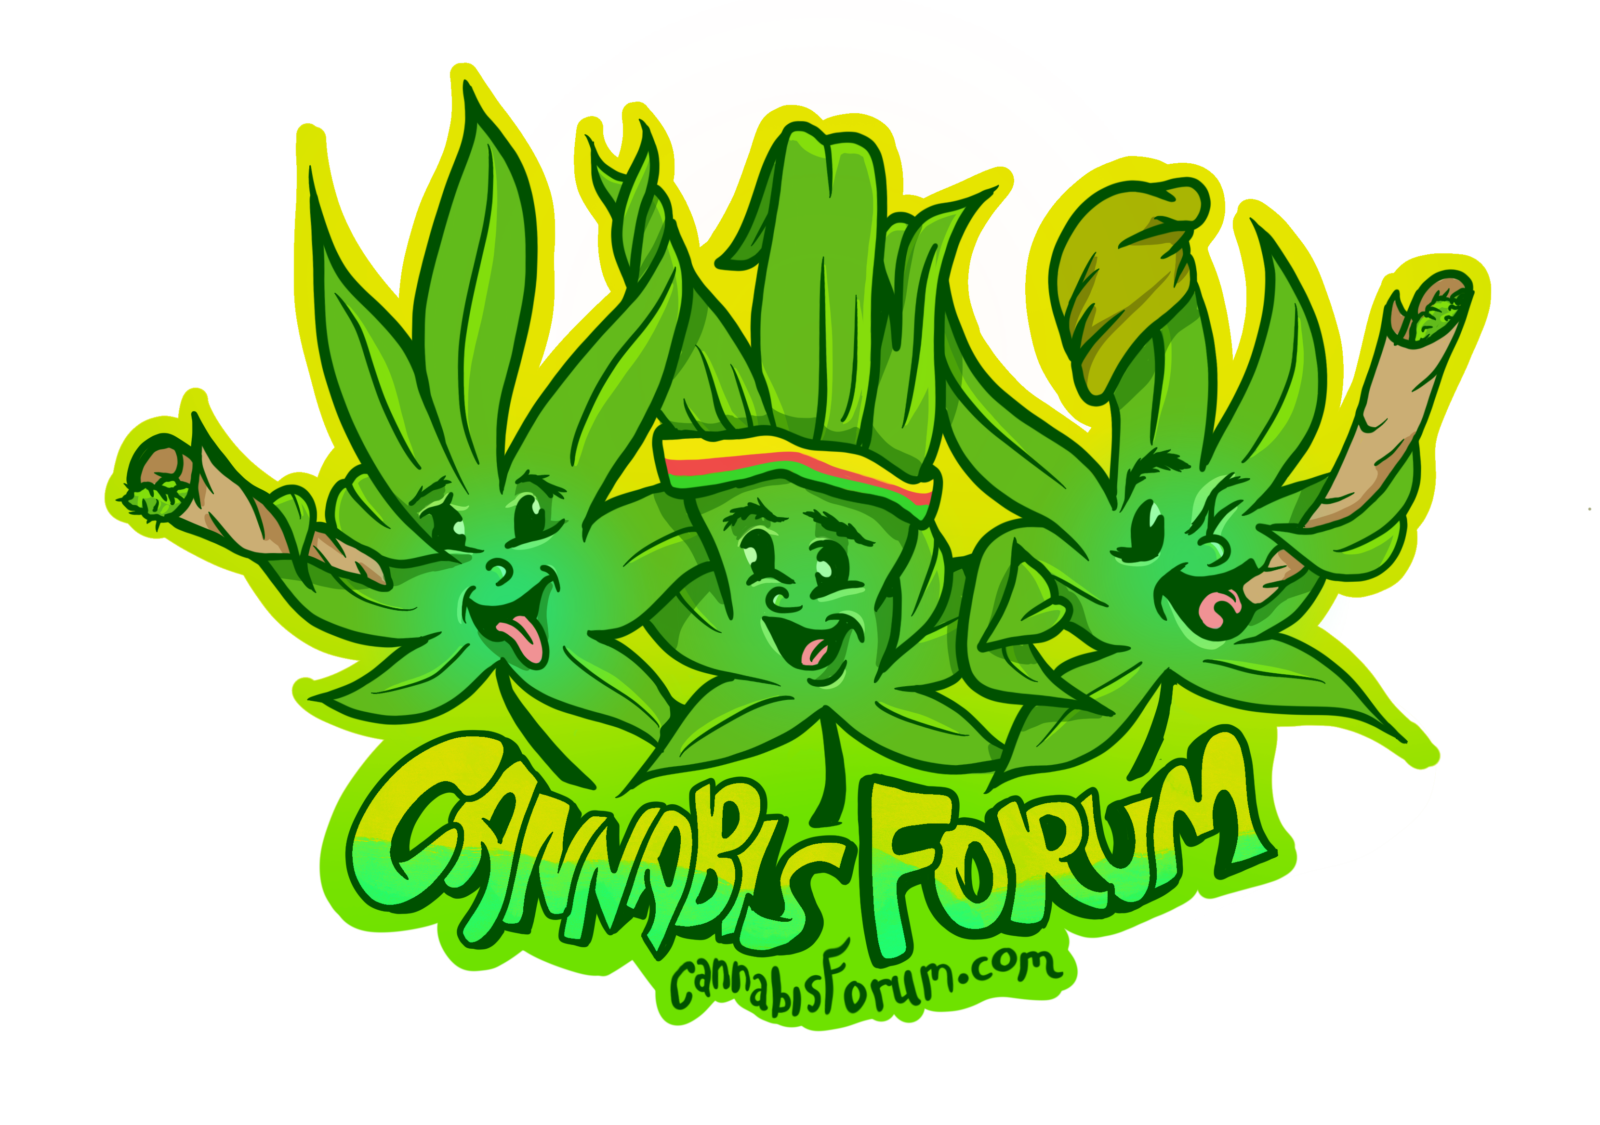 CannabisForums.com